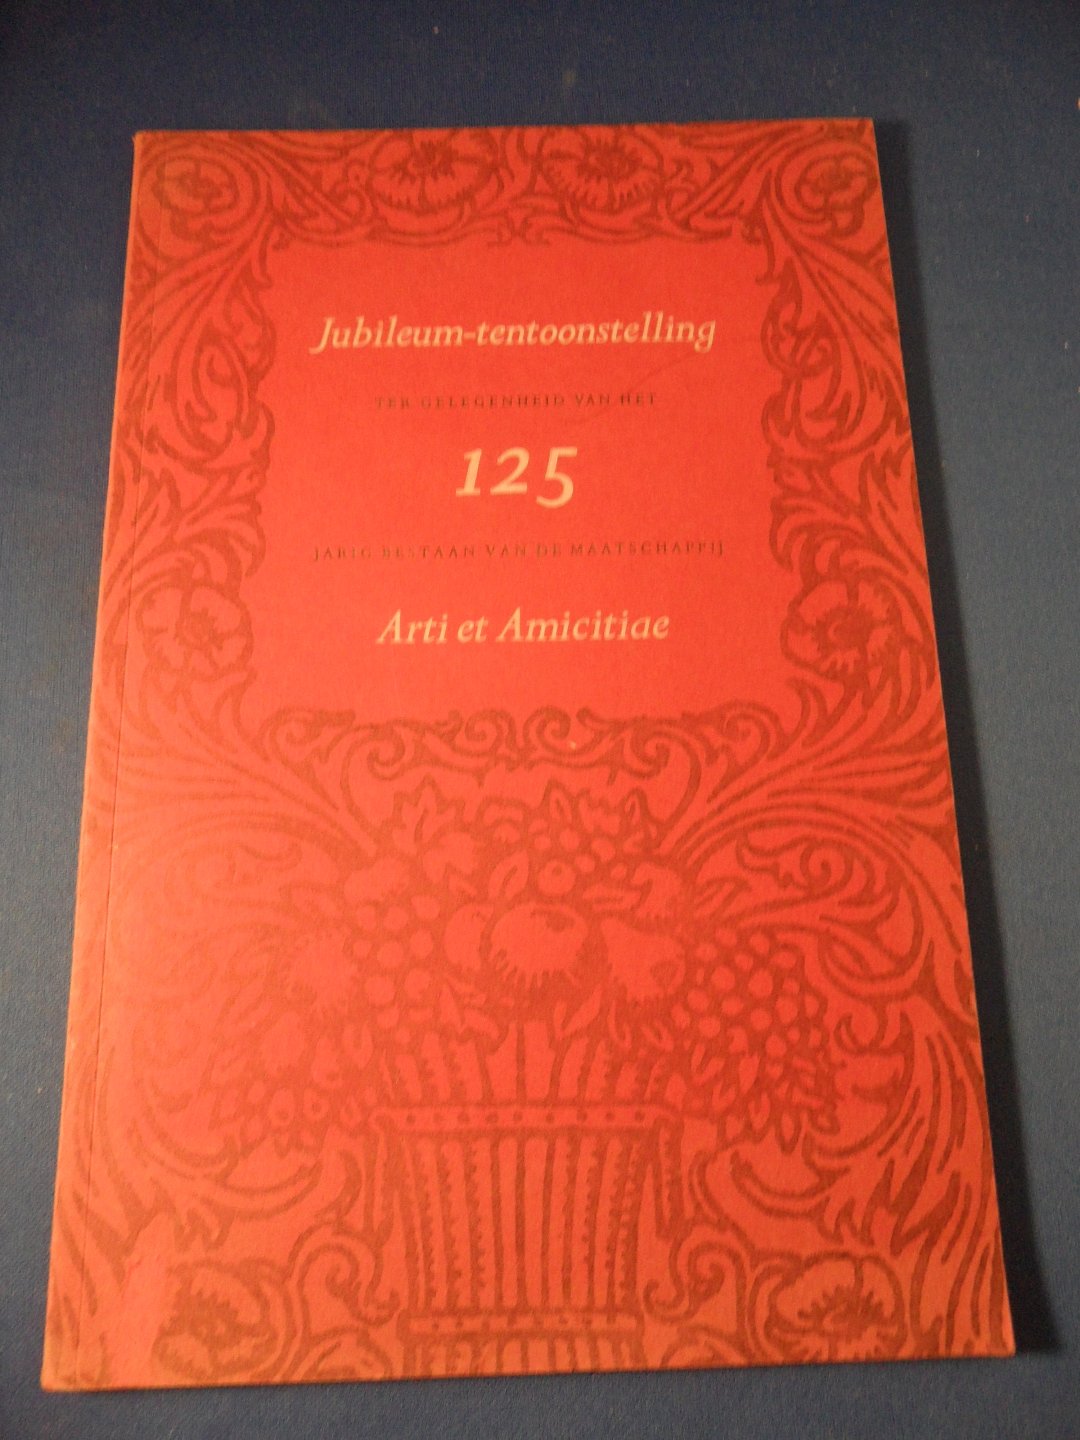  - Catalogus Jubileum-tentoonstelling ter gelegenheid van het 125 jarig bestaan van de maatschappij Arti et Amicitiae